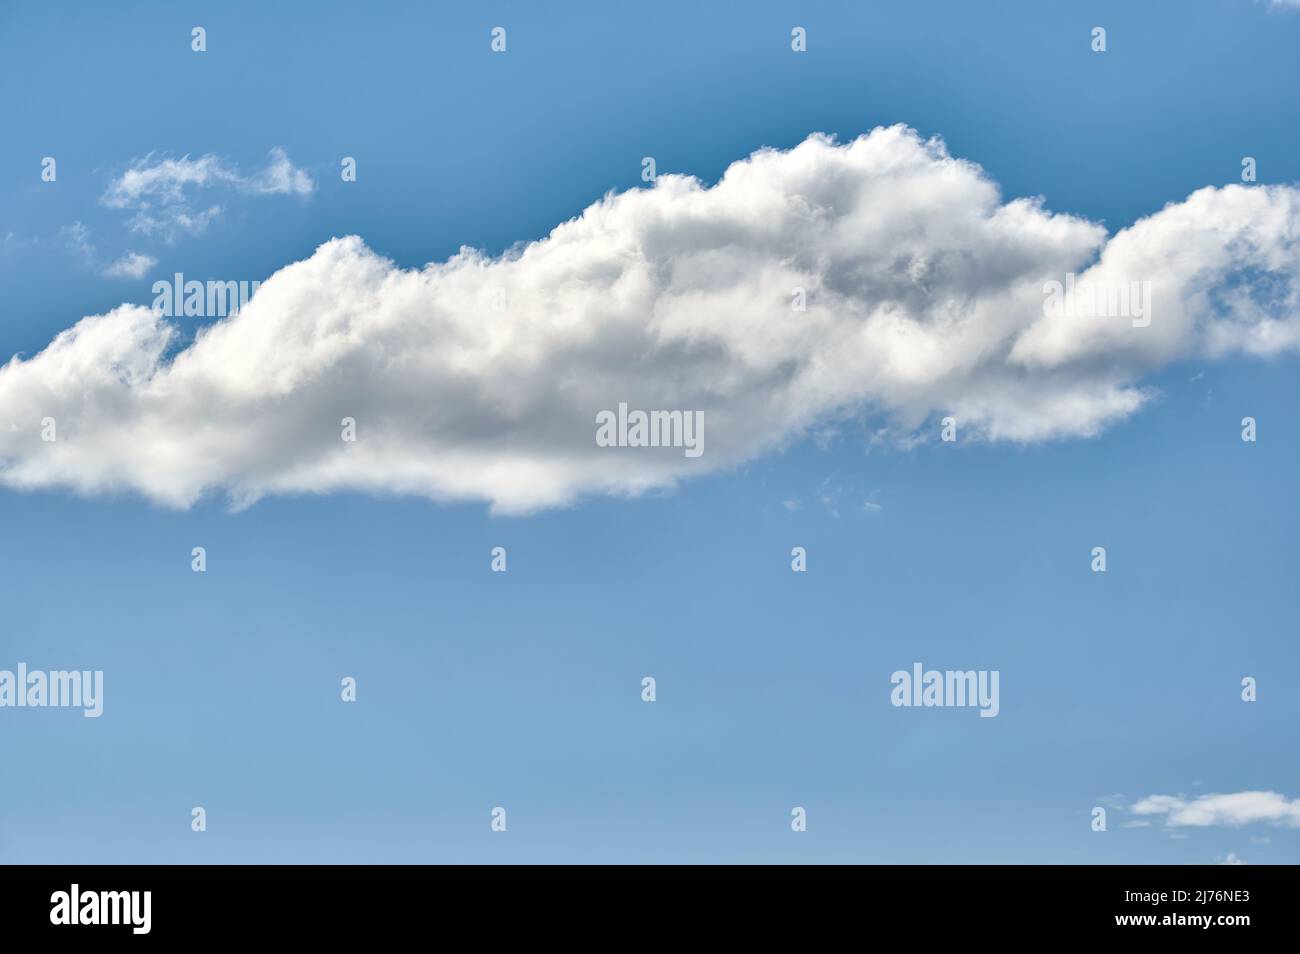 Isolierte Wolken auf einem klaren Himmel von einer starken blauen Farbe Stockfoto